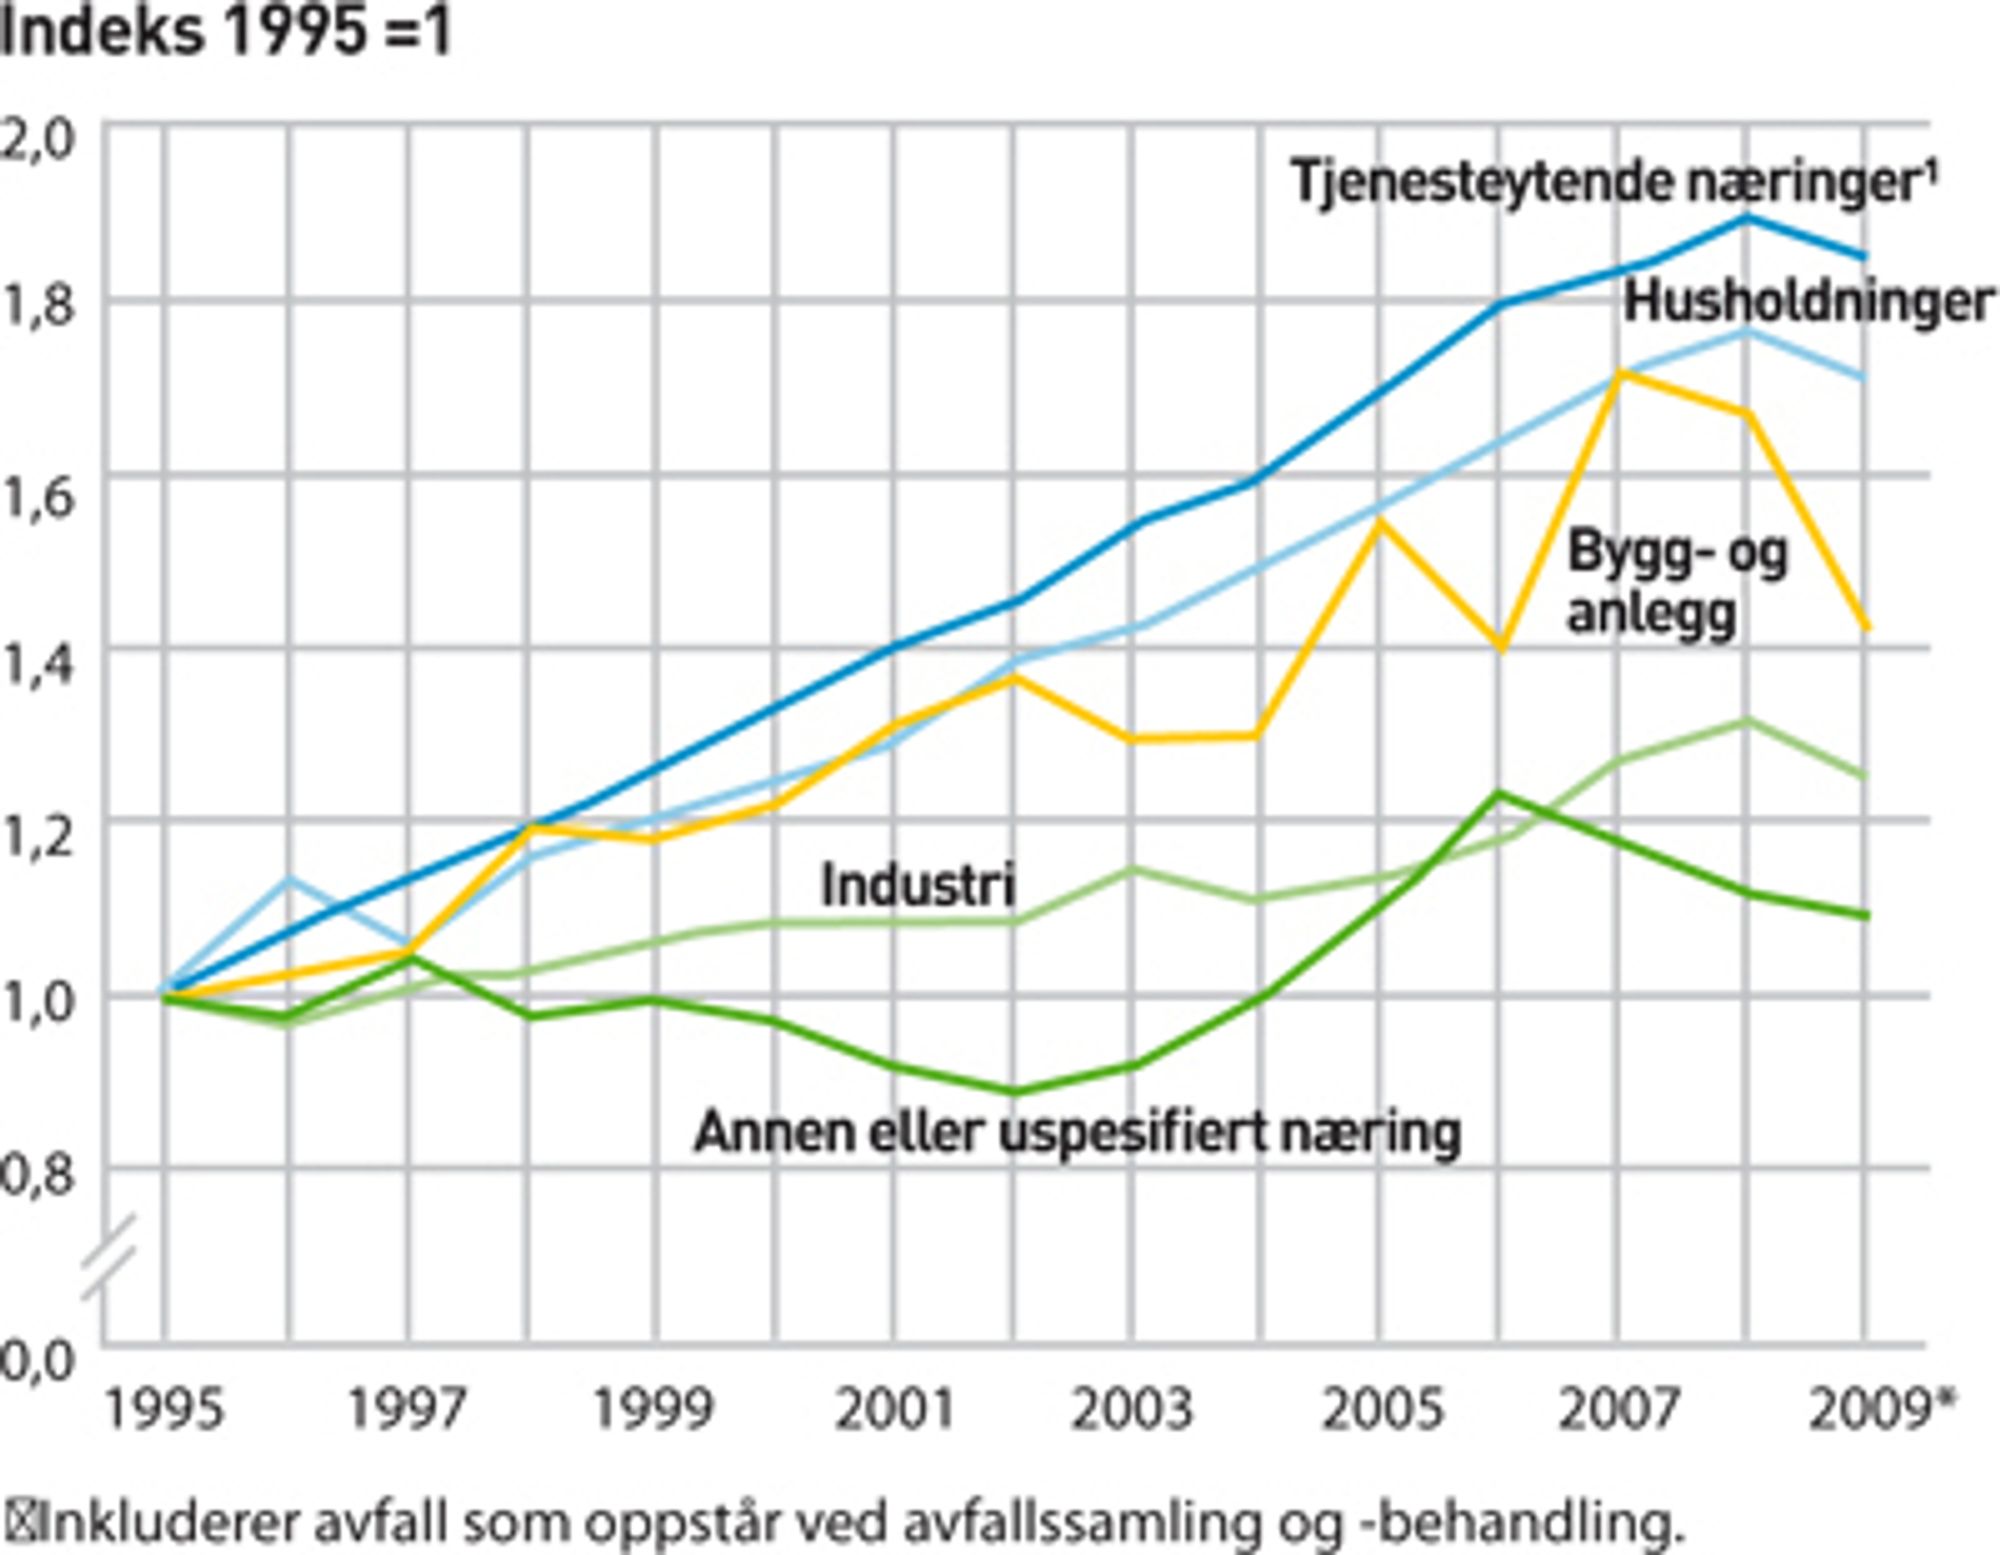 AVFALLSMENGDER I NORGE ETTER KILDE. Endelige tall 1995-2007, foreløpige tall 2008 og 2009.